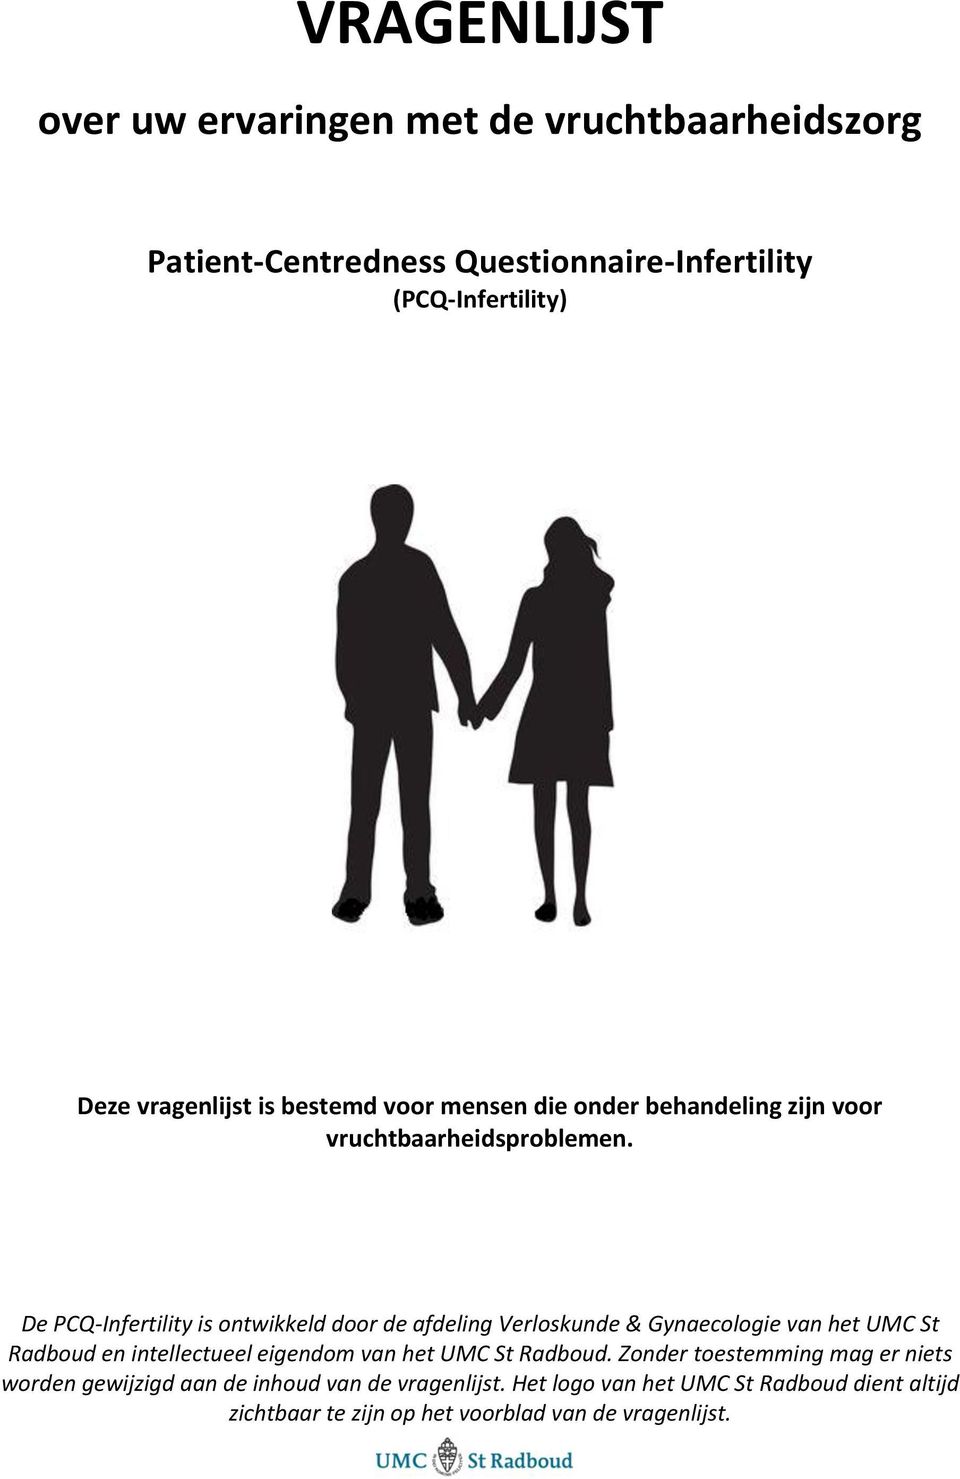 De PCQ-Infertility is ontwikkeld door de afdeling Verloskunde & Gynaecologie van het UMC St Radboud en intellectueel eigendom van het UMC